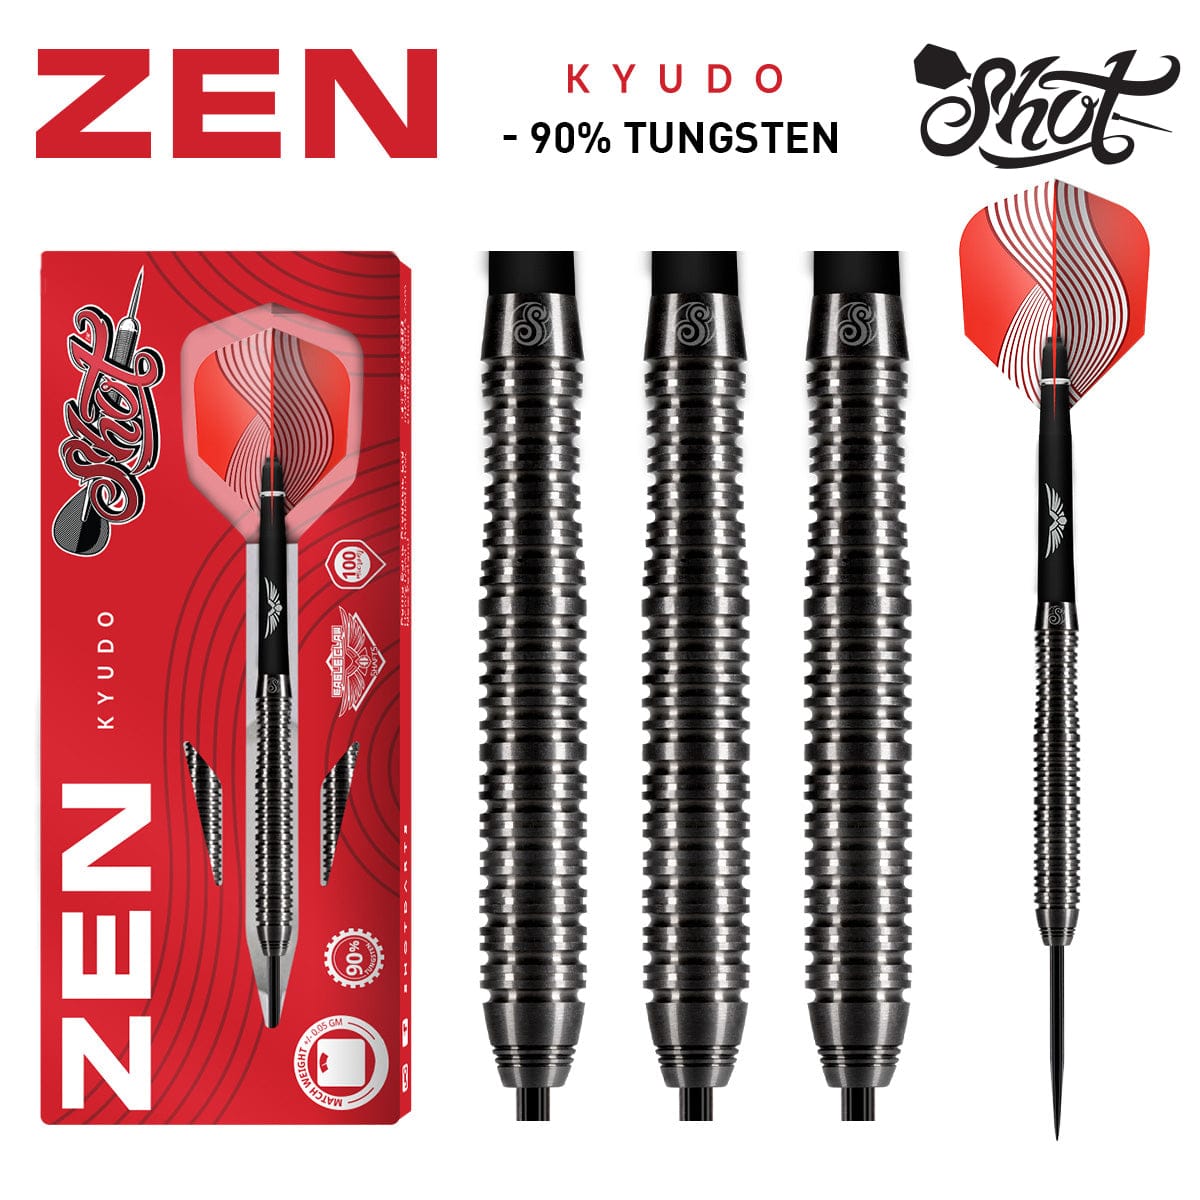 Zen Kyudo Steel Tip Dart Set - 90% Tungsten Barrels